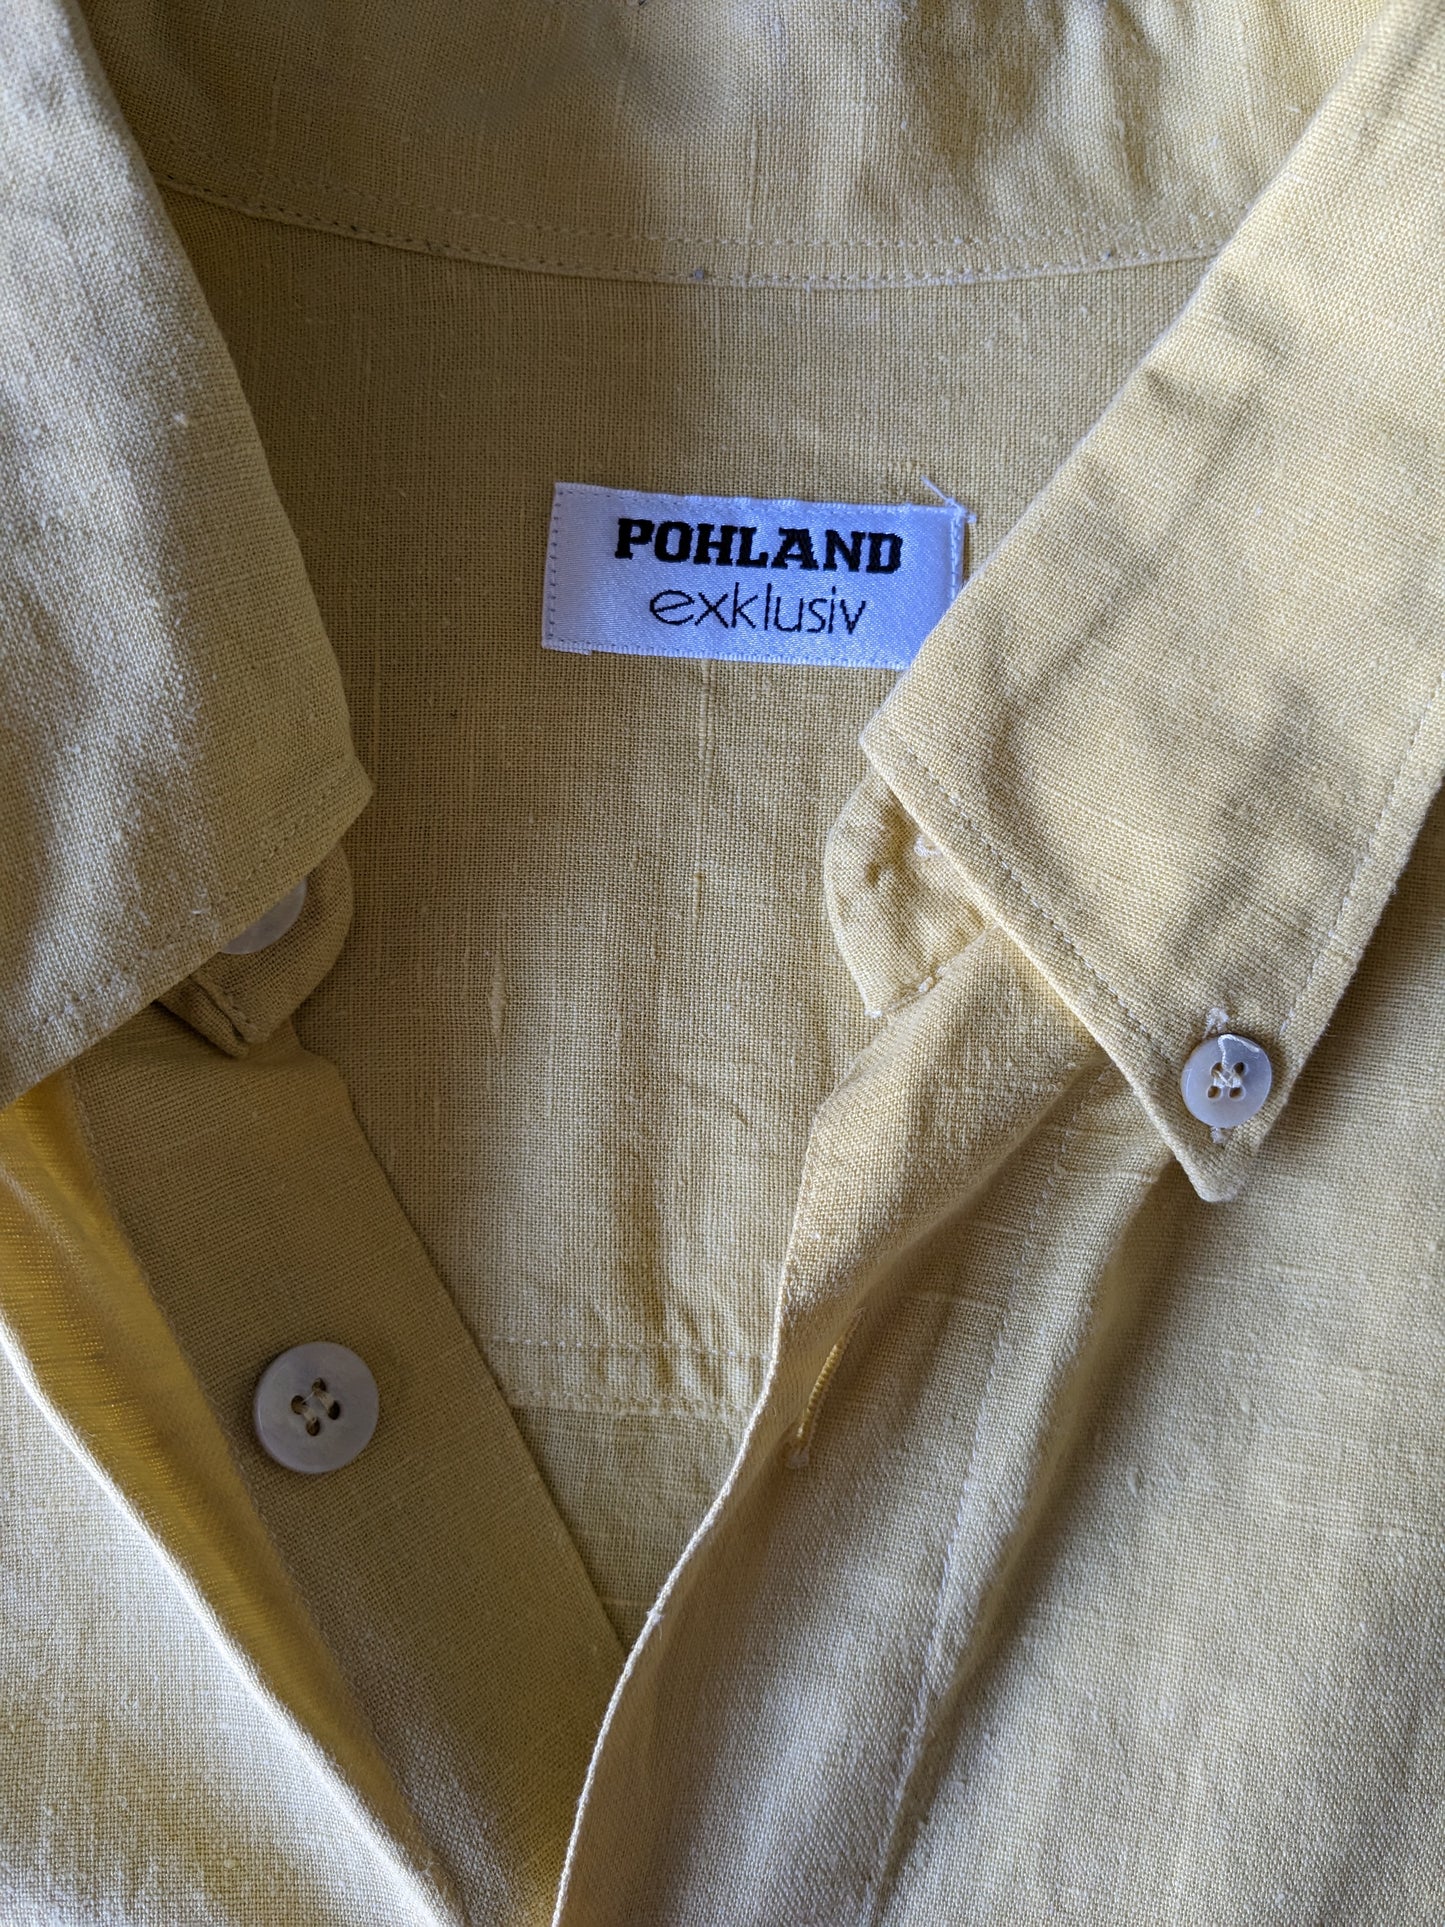 Camicia di lino exklusiv di Pohland vintage con bottoni più grandi. Colore giallo. Dimensione 2xl / xxl.